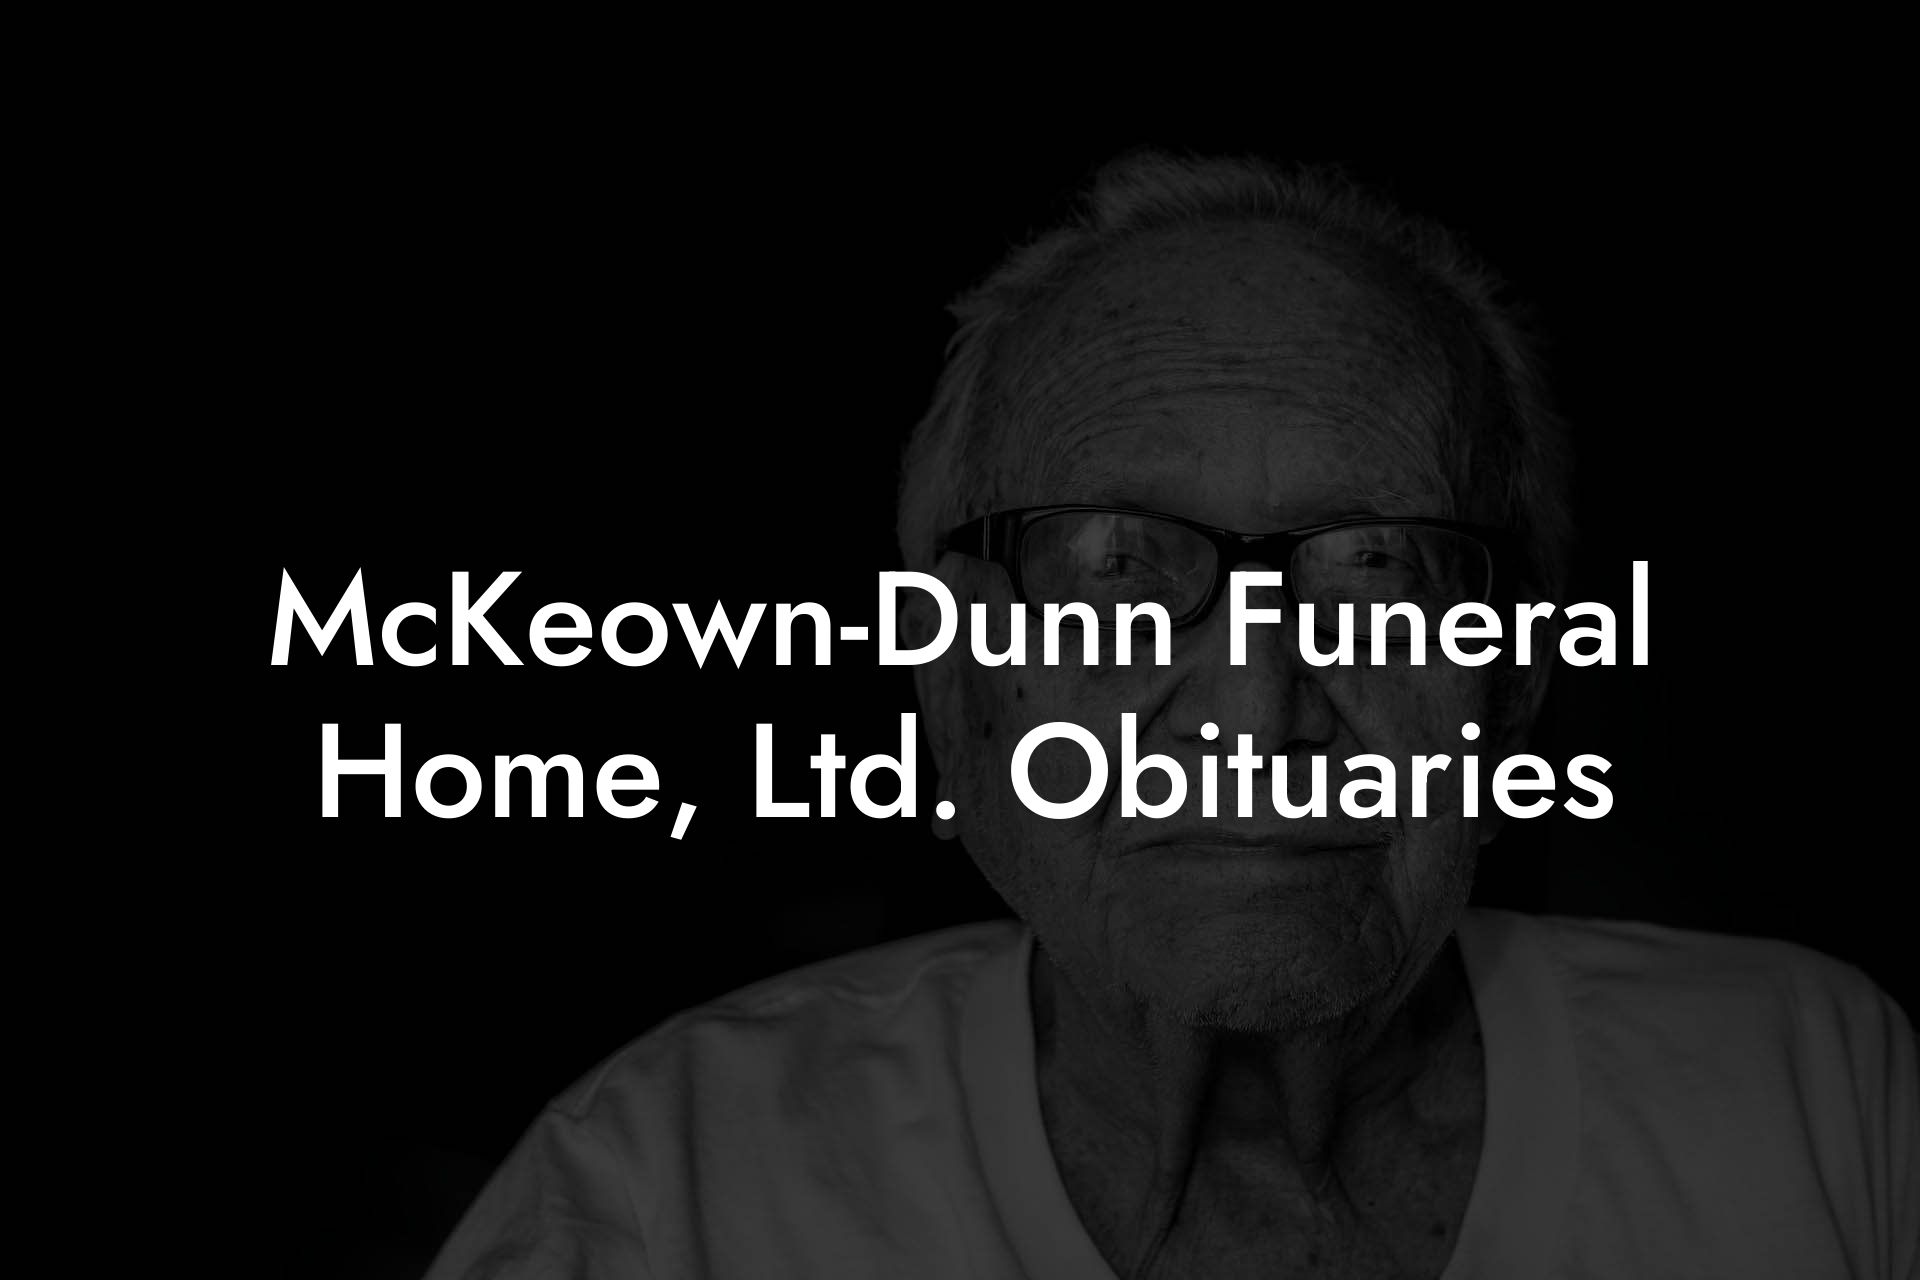 McKeown-Dunn Funeral Home, Ltd. Obituaries